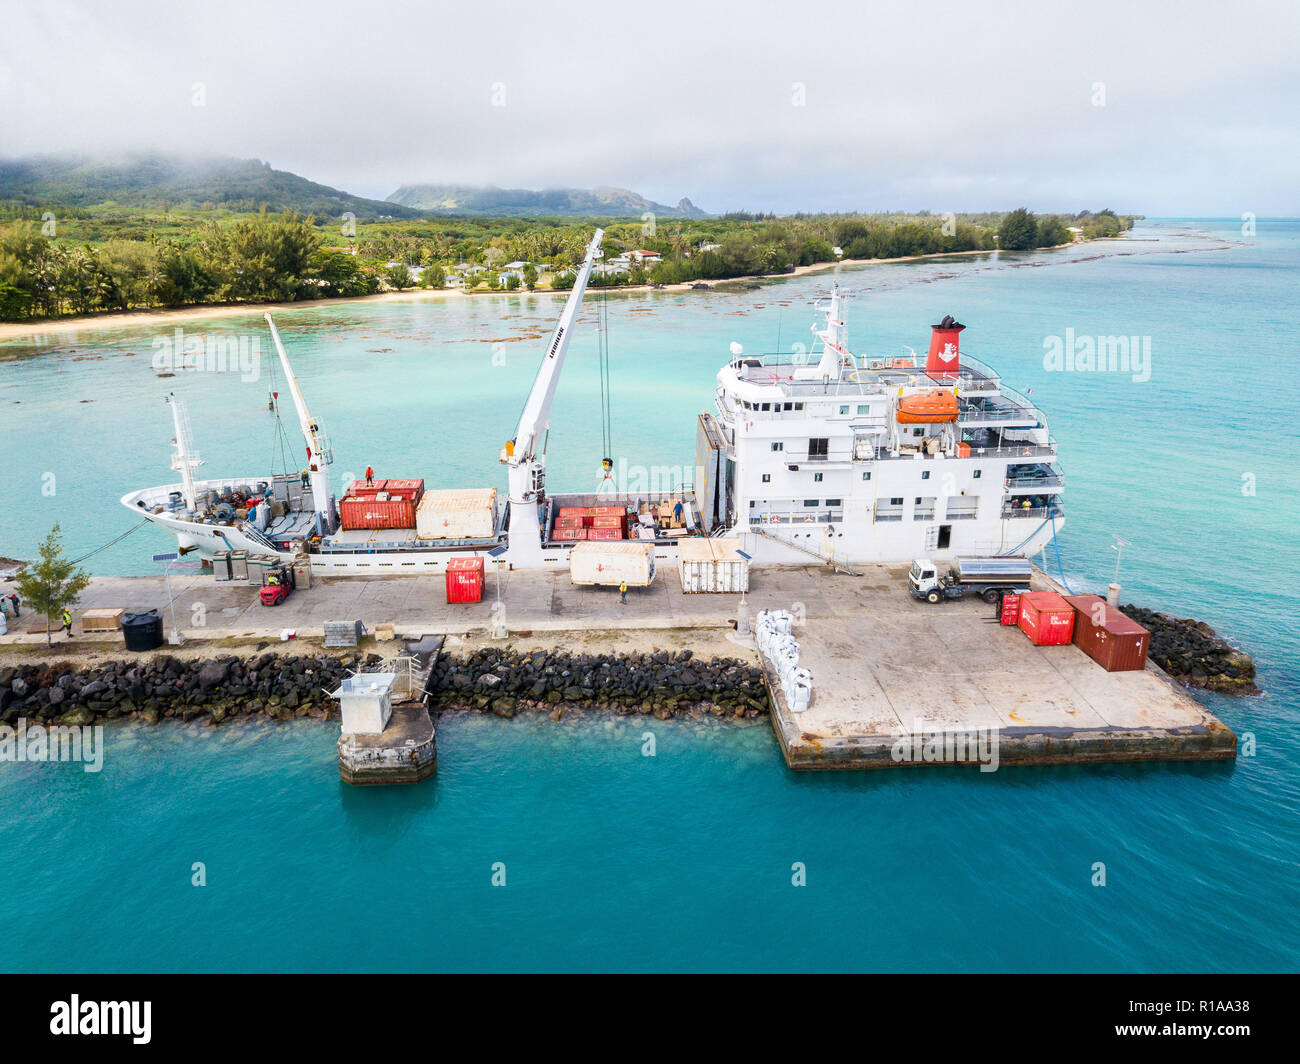 Luftaufnahme von tubuai Insel und Azure türkisblaue Lagune. Schiff Tuhaa Pae IV Entladen im Hafen von Mataura, Australs, Französisch-Polynesien, Ozeanien. Stockfoto